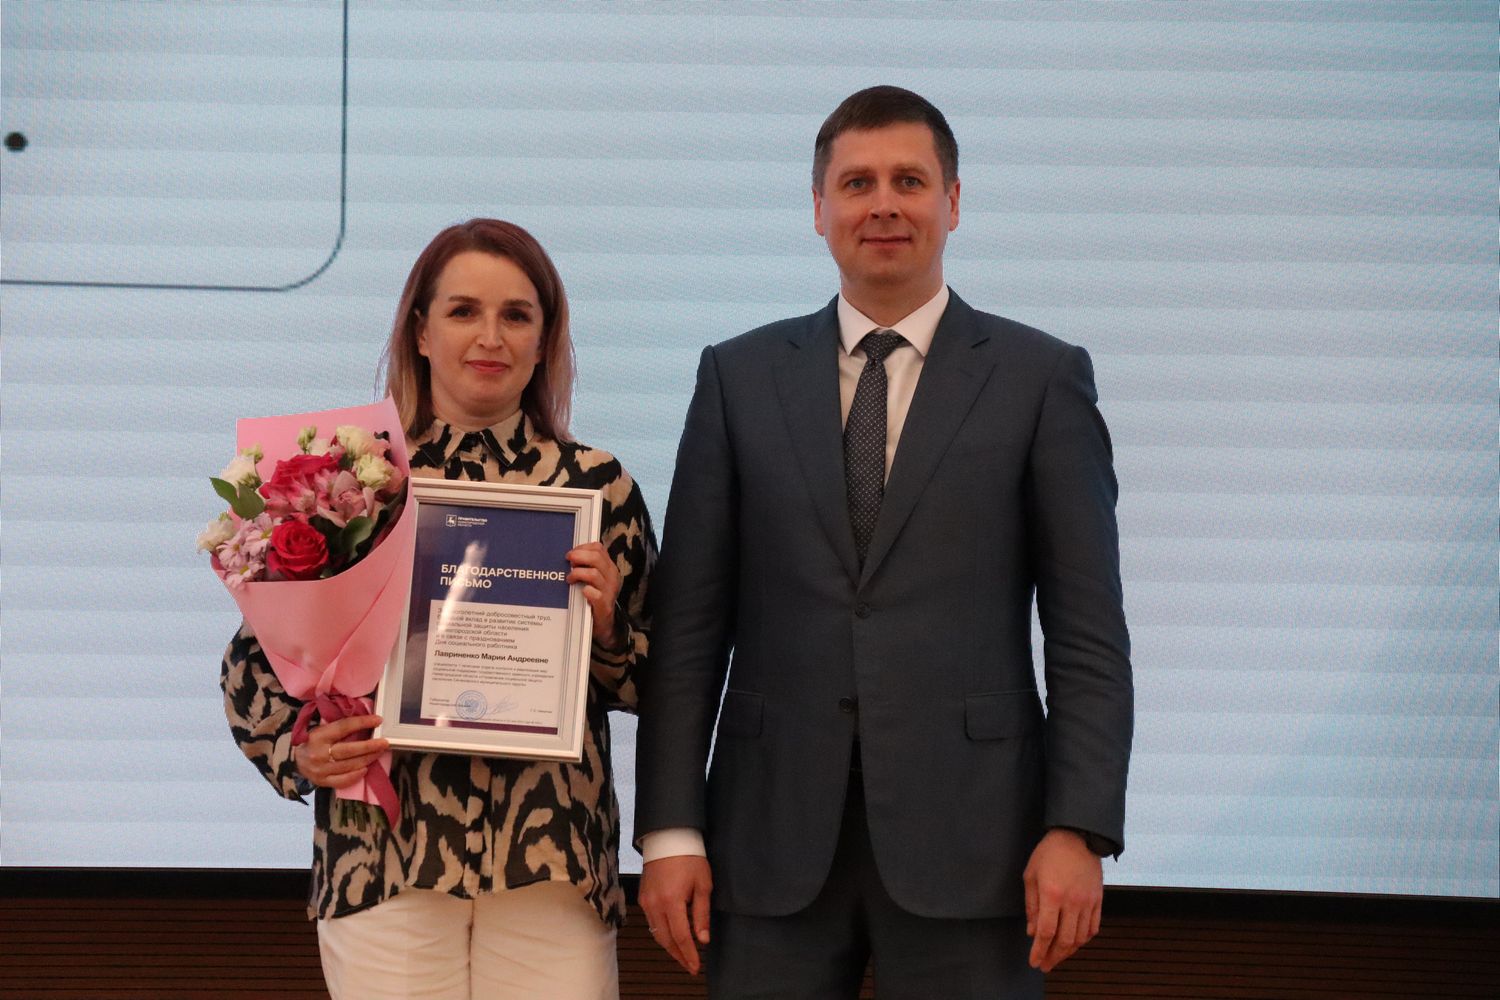 Около 30 нижегородских соцработников в преддверии профессионального праздника получили награды за трудовые достижения